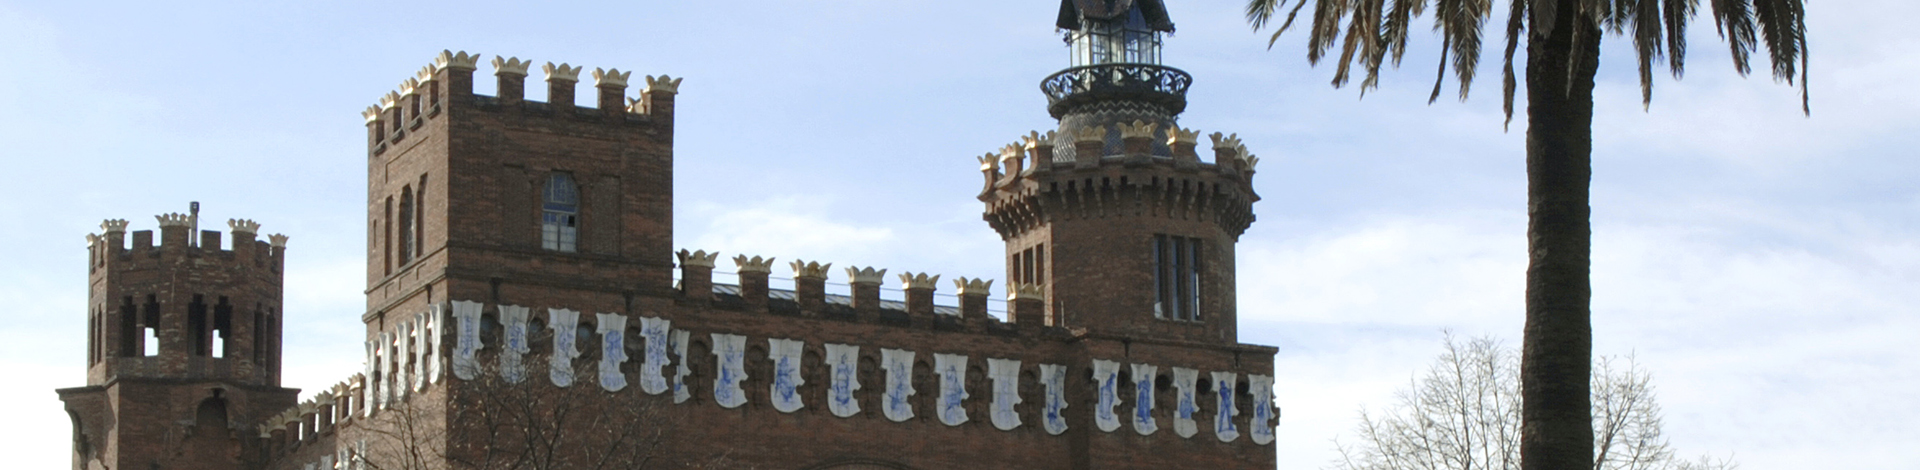 Façana de l'edifici del Castell dels Tres Dragons. Foto d'Oriol Sardà/museuciencies